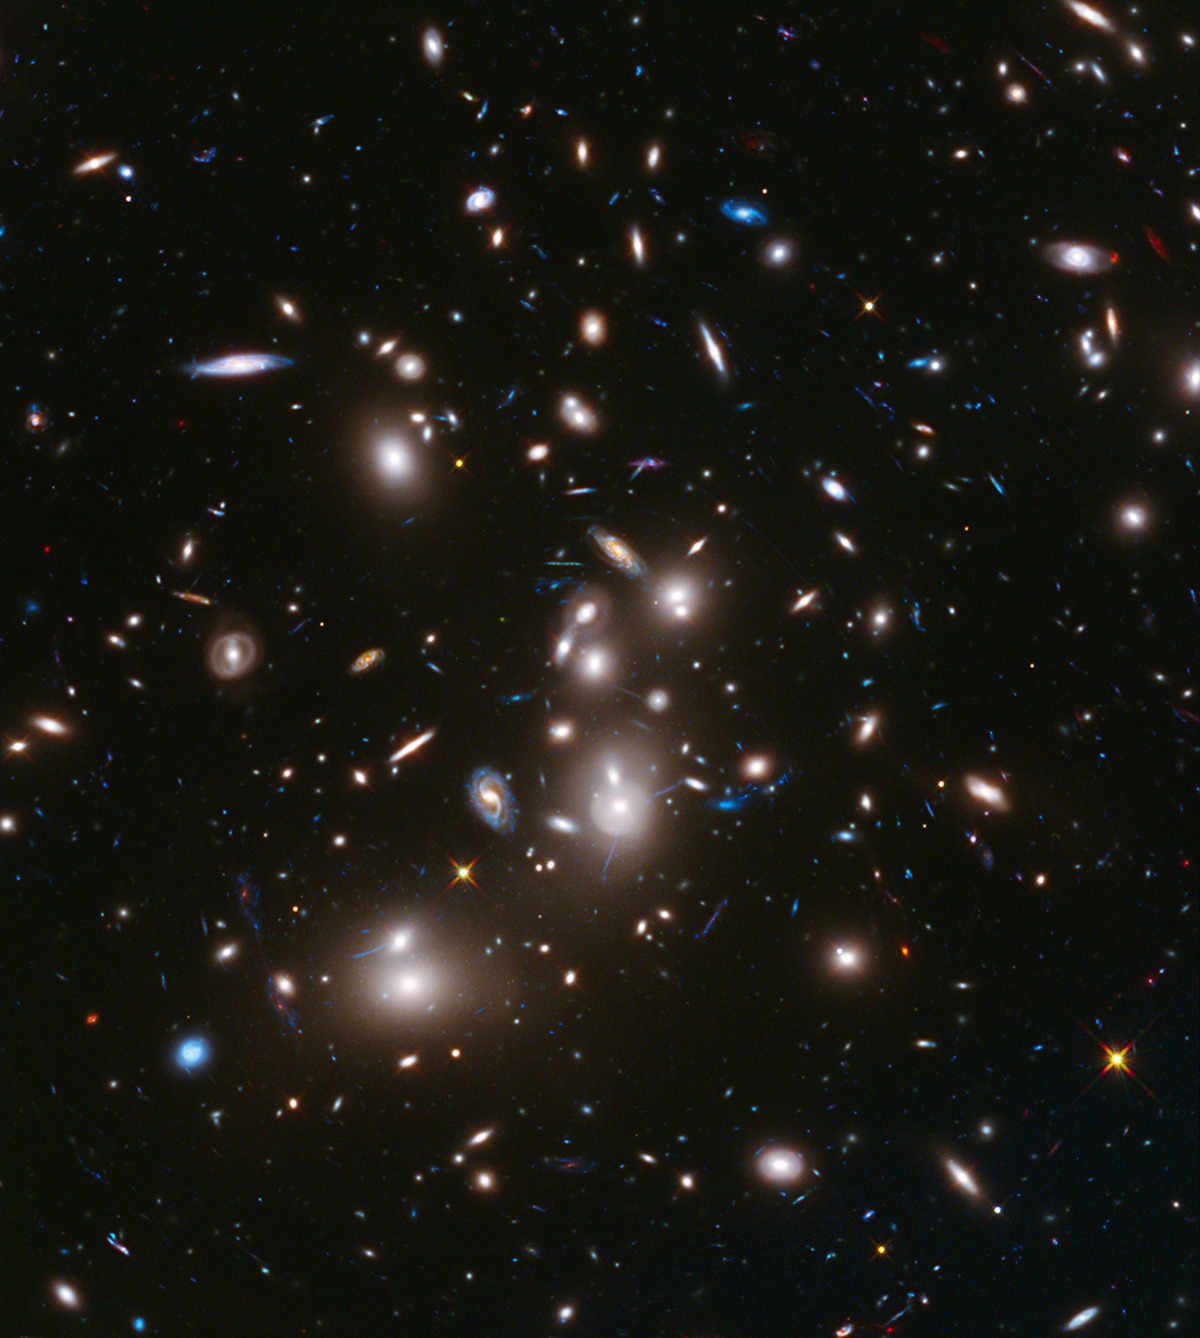 Slika galaktičkog skupa (ili klastera) Abell 2744 koji je snimio svemirski teleskop Hubble 24. studenoga 2013. godine. Udaljena 3.5 milijardi svjetlosnih godina skup sadrži nekoliko stotina galaksija i vjerojatno je nakupina najmanje četiri manja jata galaksija. Snažno gravitacijsko polje Abella 2744 djeluje kao leća, osvjetljavajući i povećavajući svjetlost gotovo 3000 udaljenih pozadinskih galaksija (©NASA).